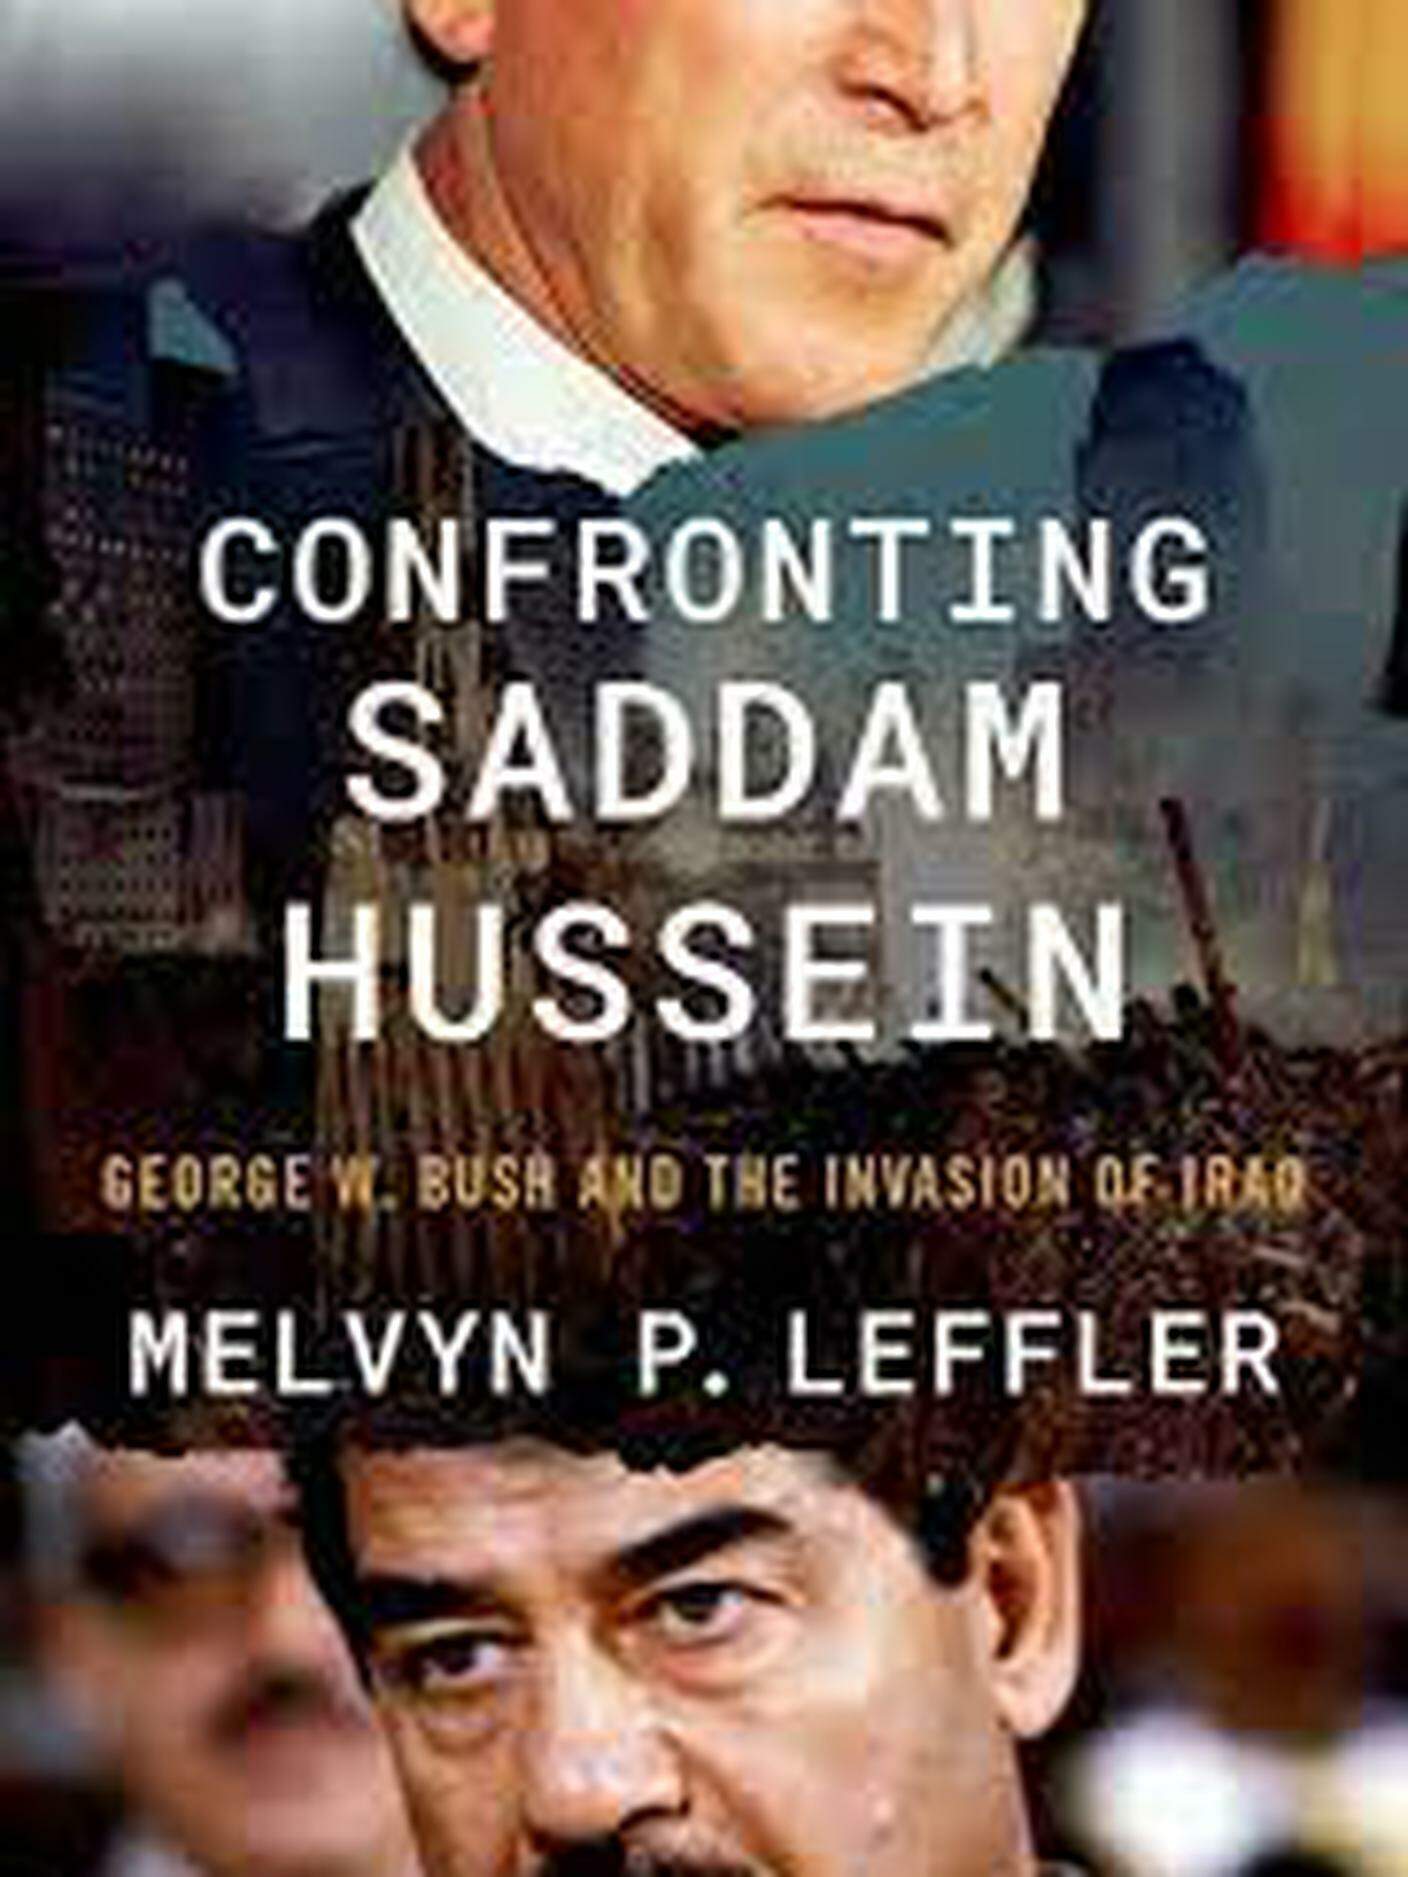 La copertina del libro scritto da Melvyn Leffler: "Affrontare Saddam Hussein: George Bush e l’invasione in Iraq"